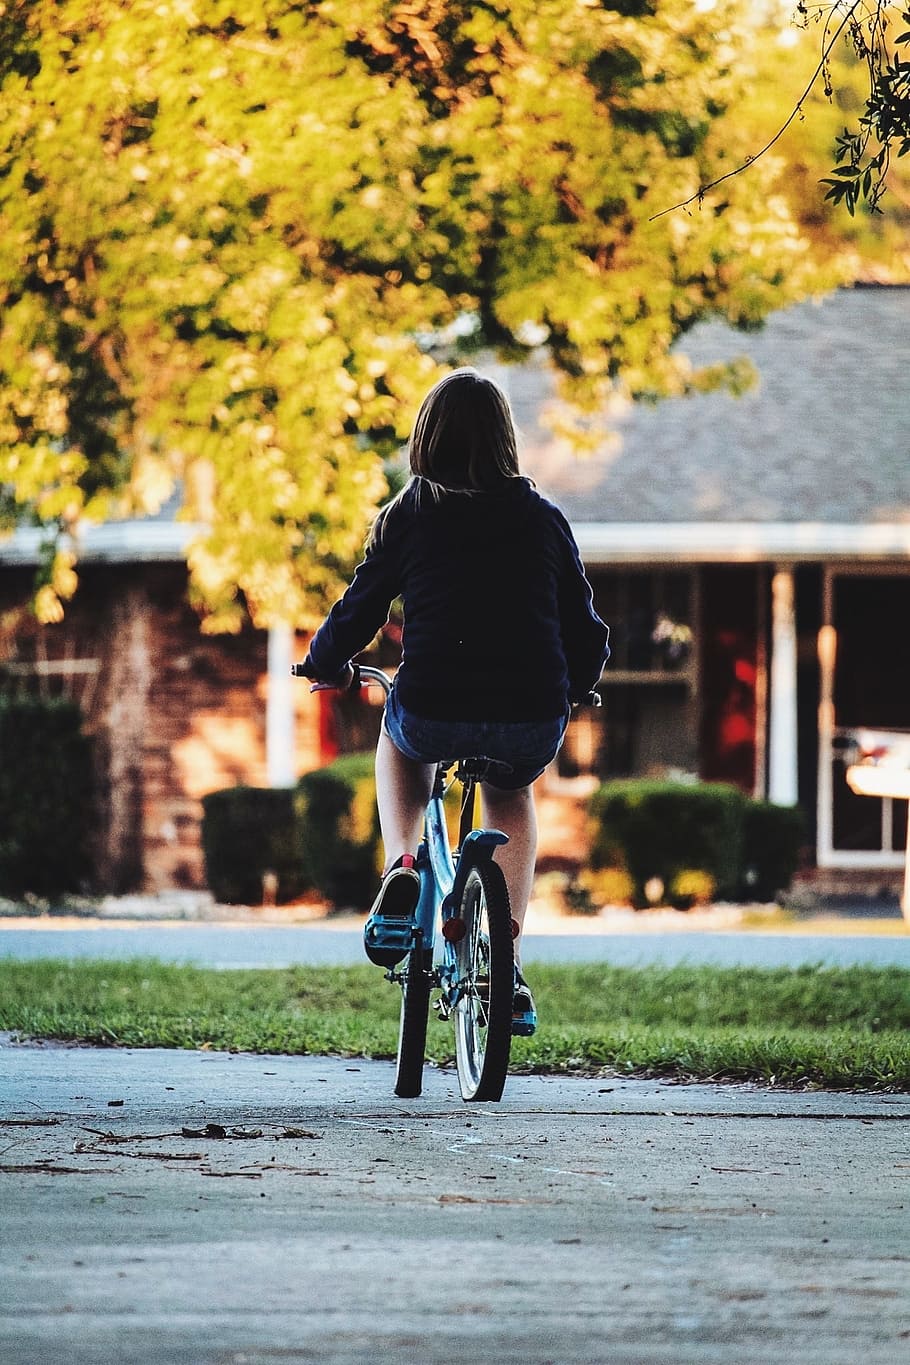 niña montando bicicleta, paseo, ciclo, bicicleta, niño, infancia, vecino, barrio, hogar, otoño